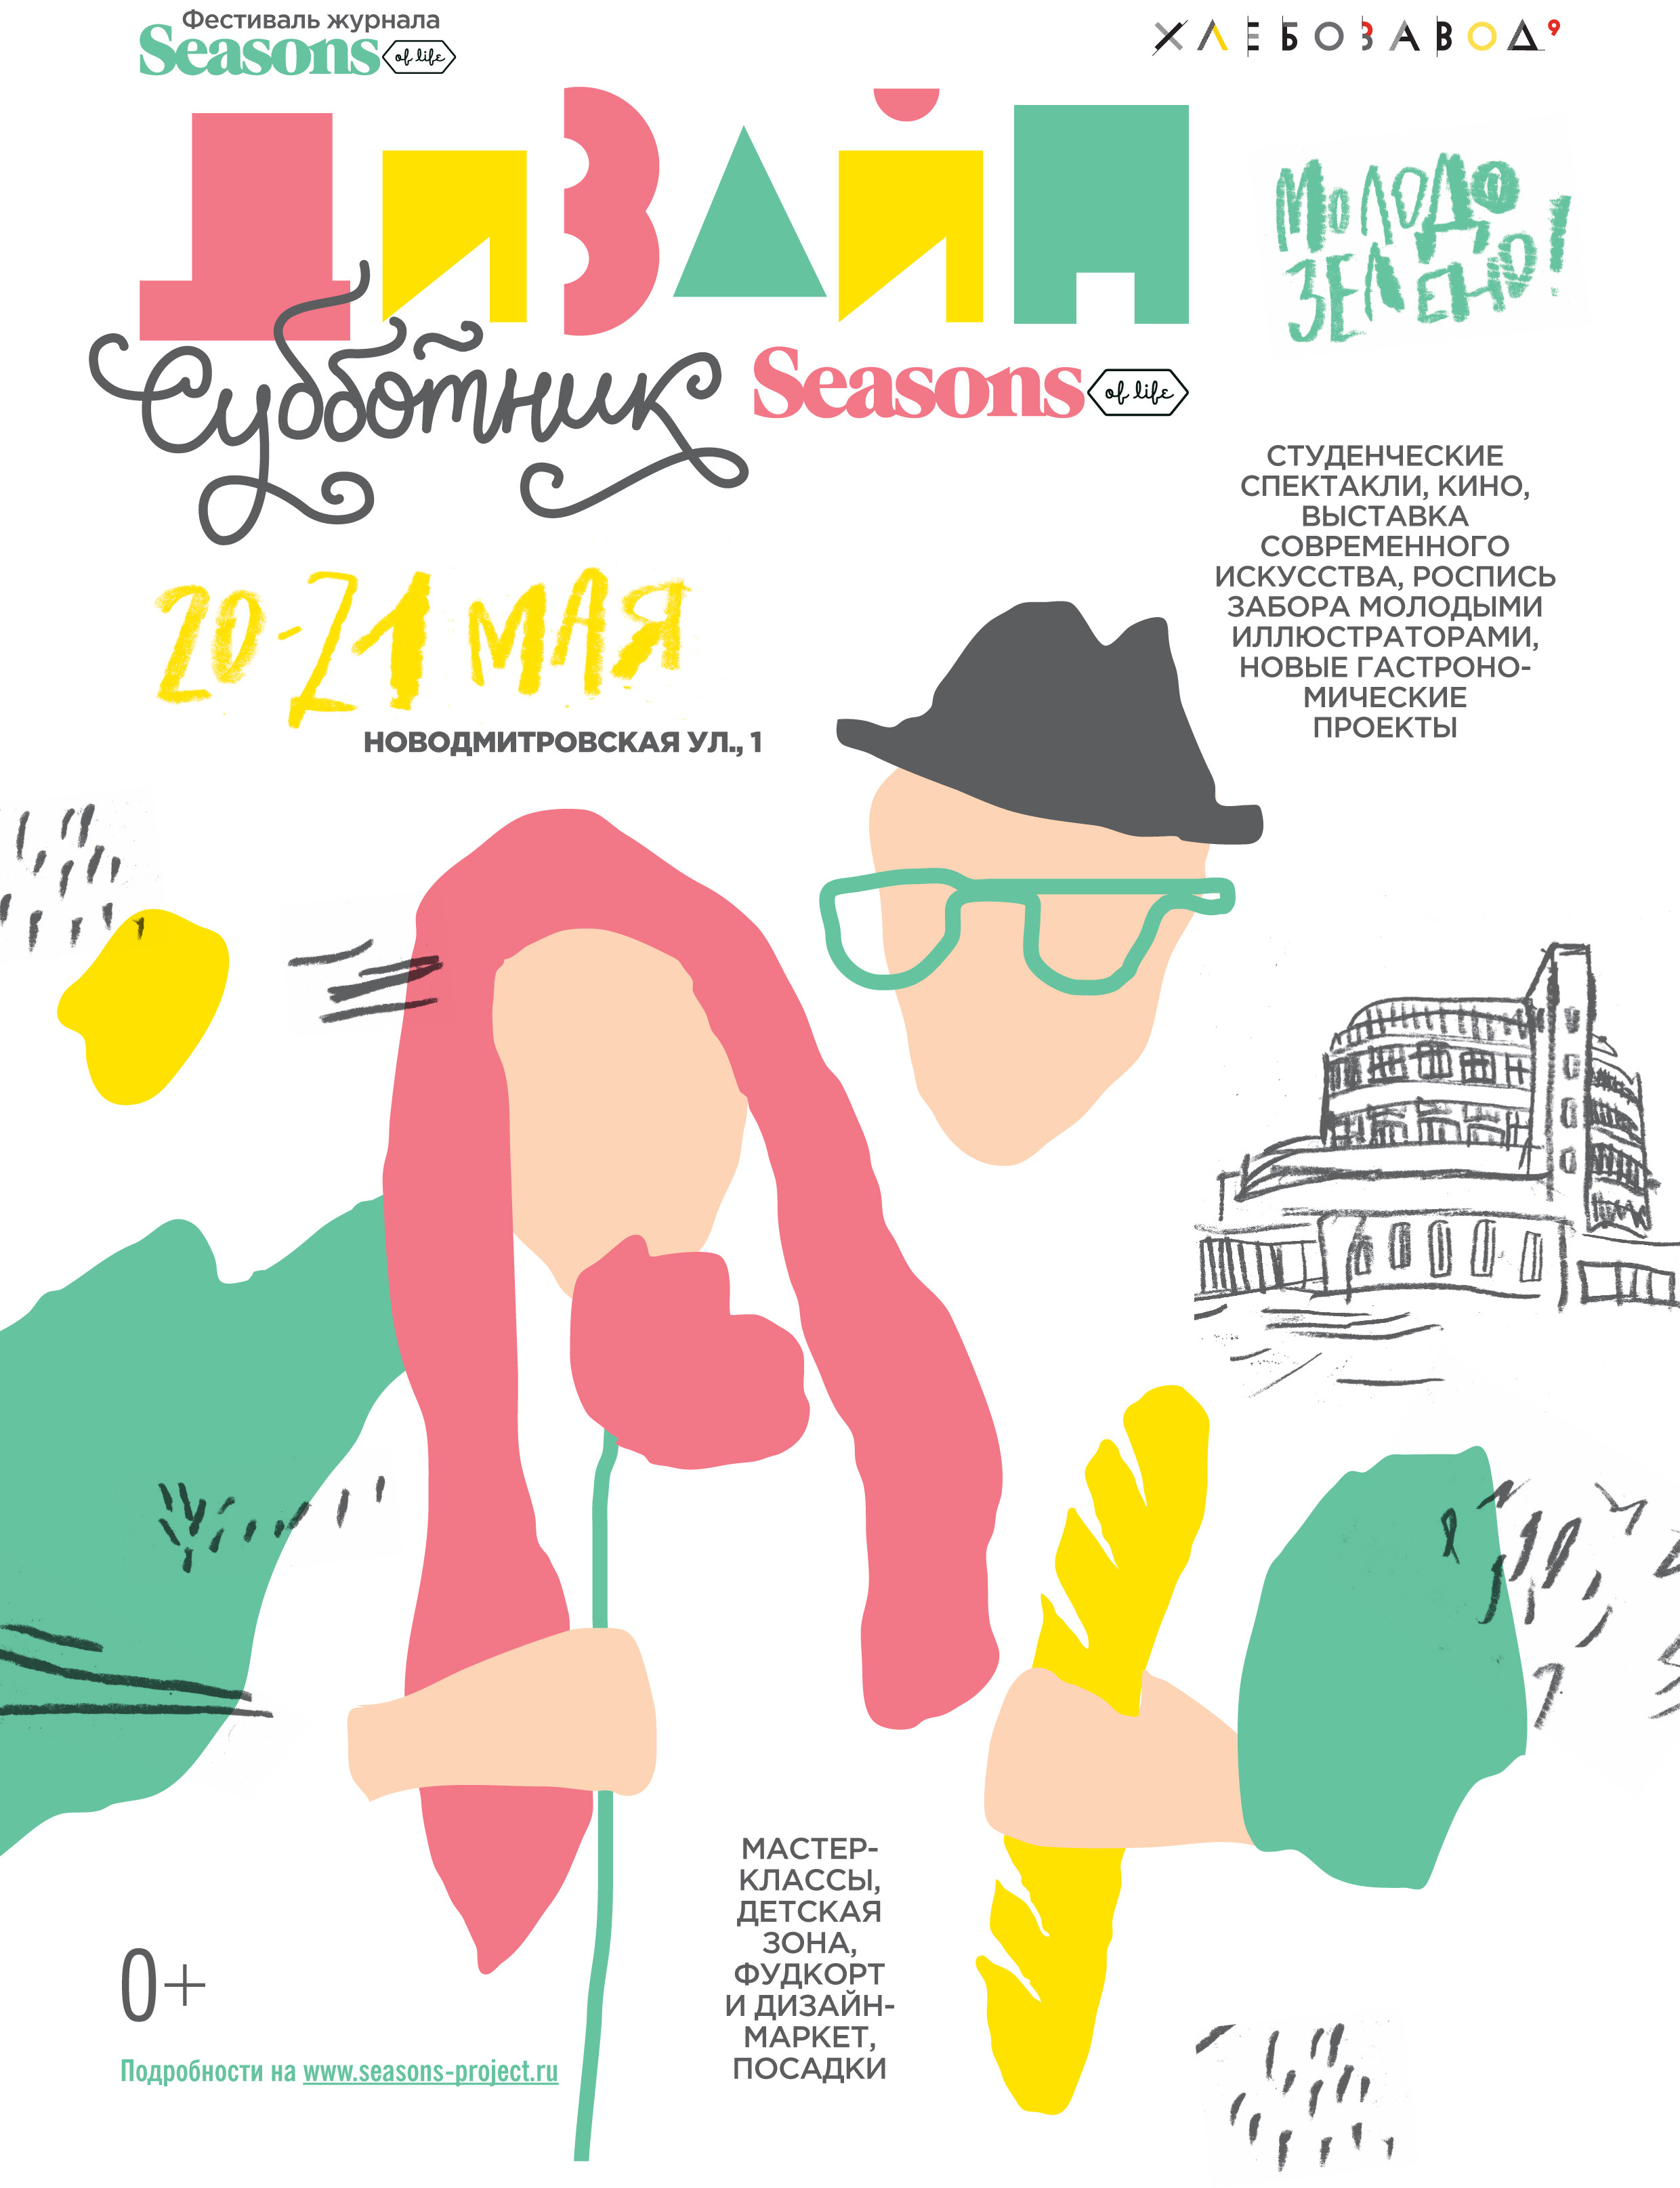 Весенний фестиваль «Дизайн-Cубботник» журнала Seasons of Life